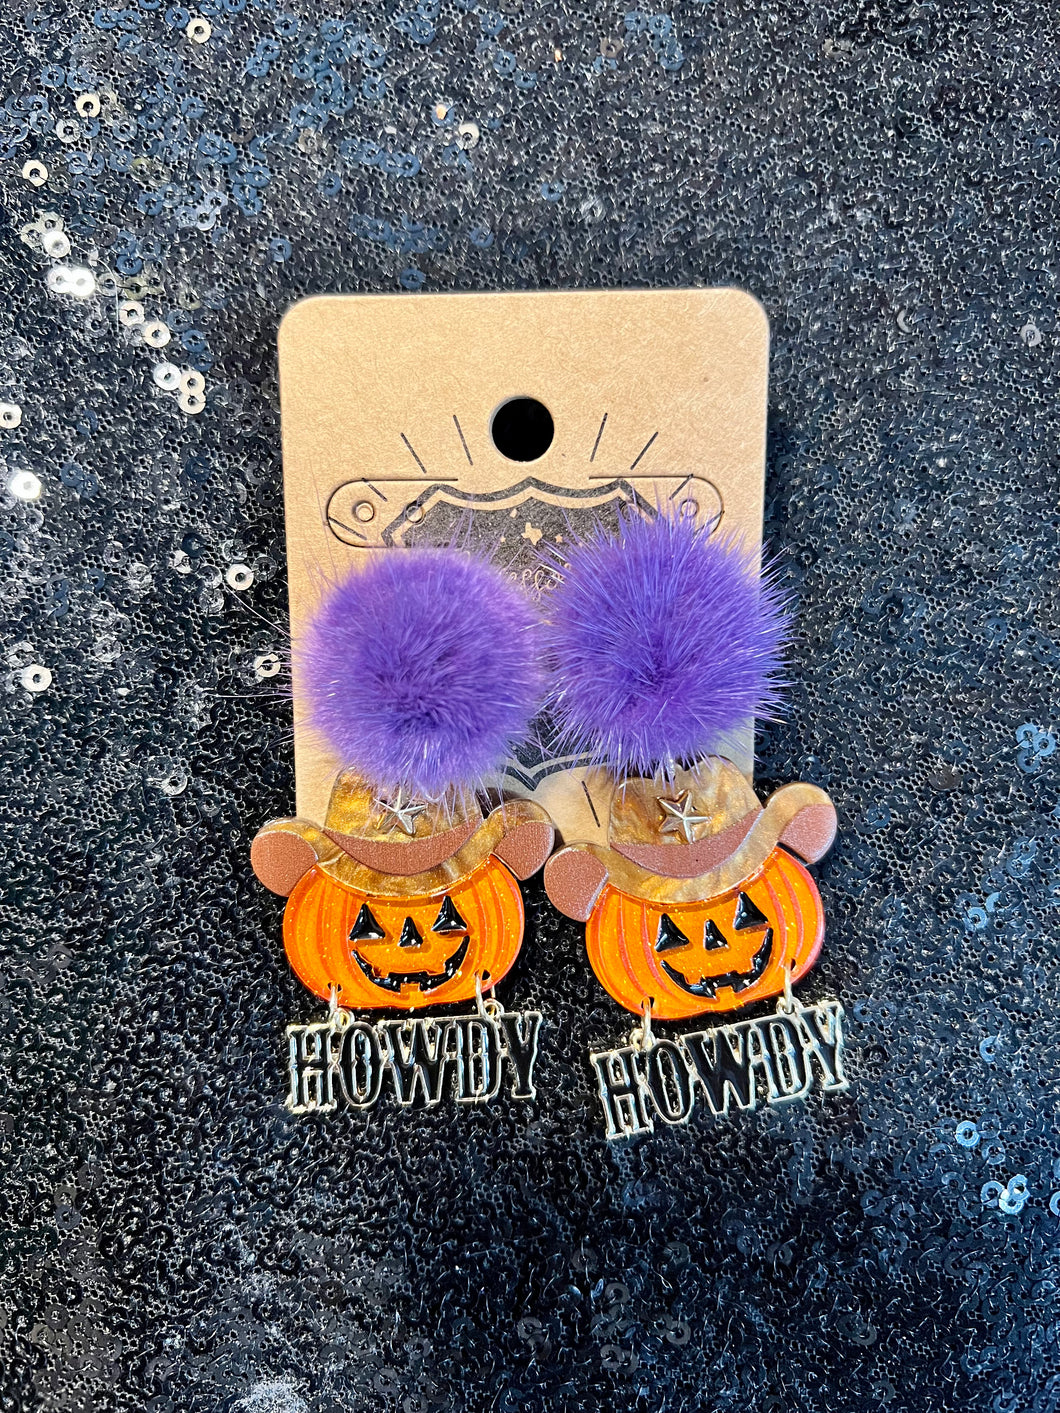 Pumpkin Howdy Earrings